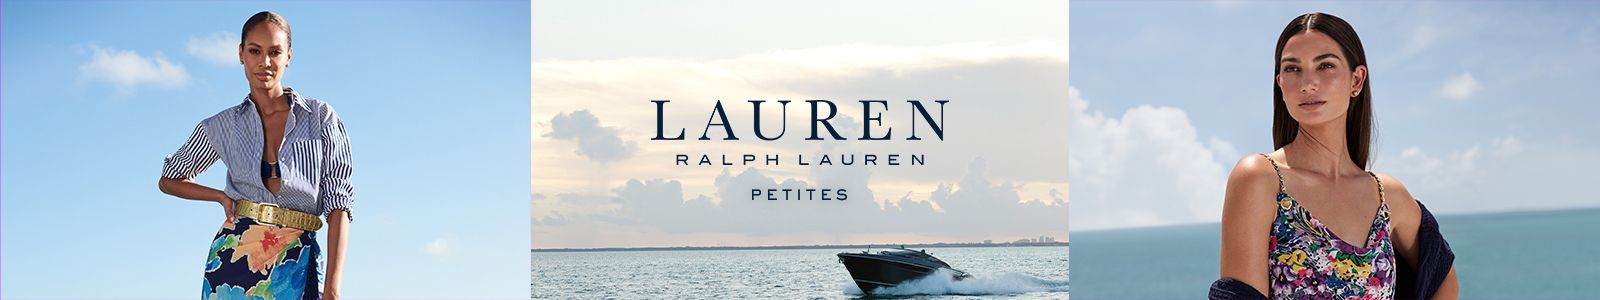 Lauren Ralph Lauren, Petites